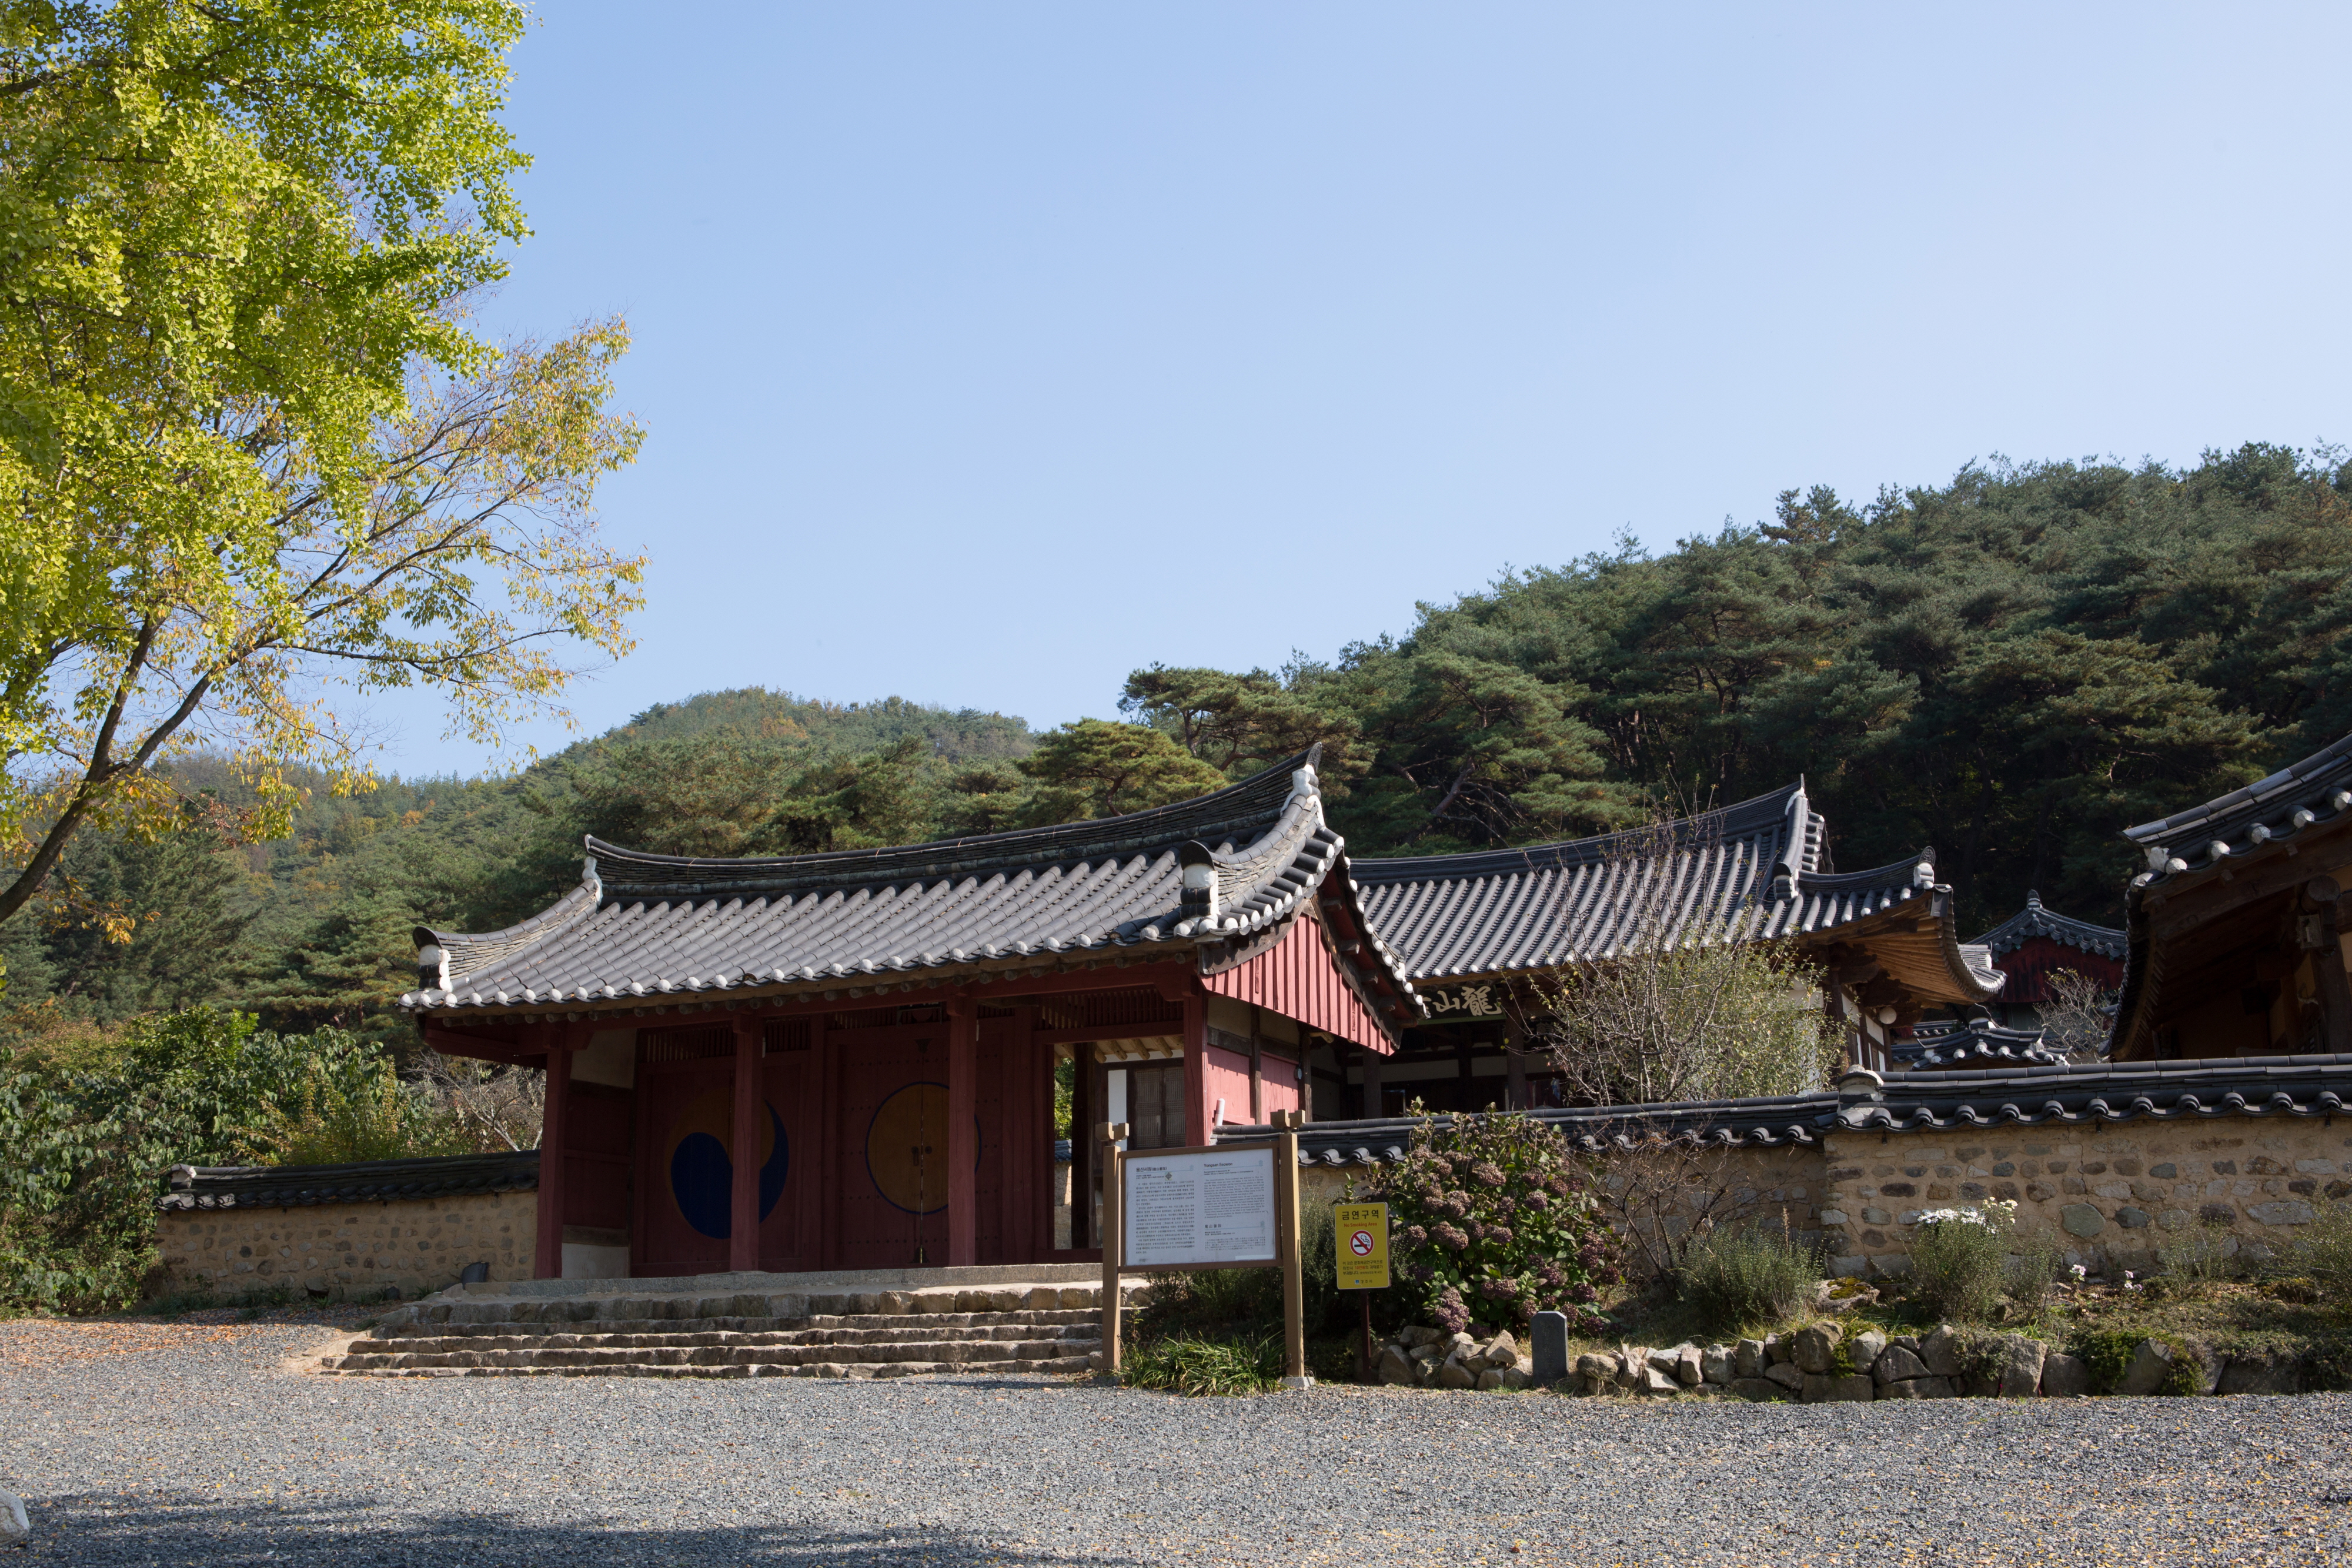 용산서원_마을 입구 전경 (촬영년도 : 2015년)